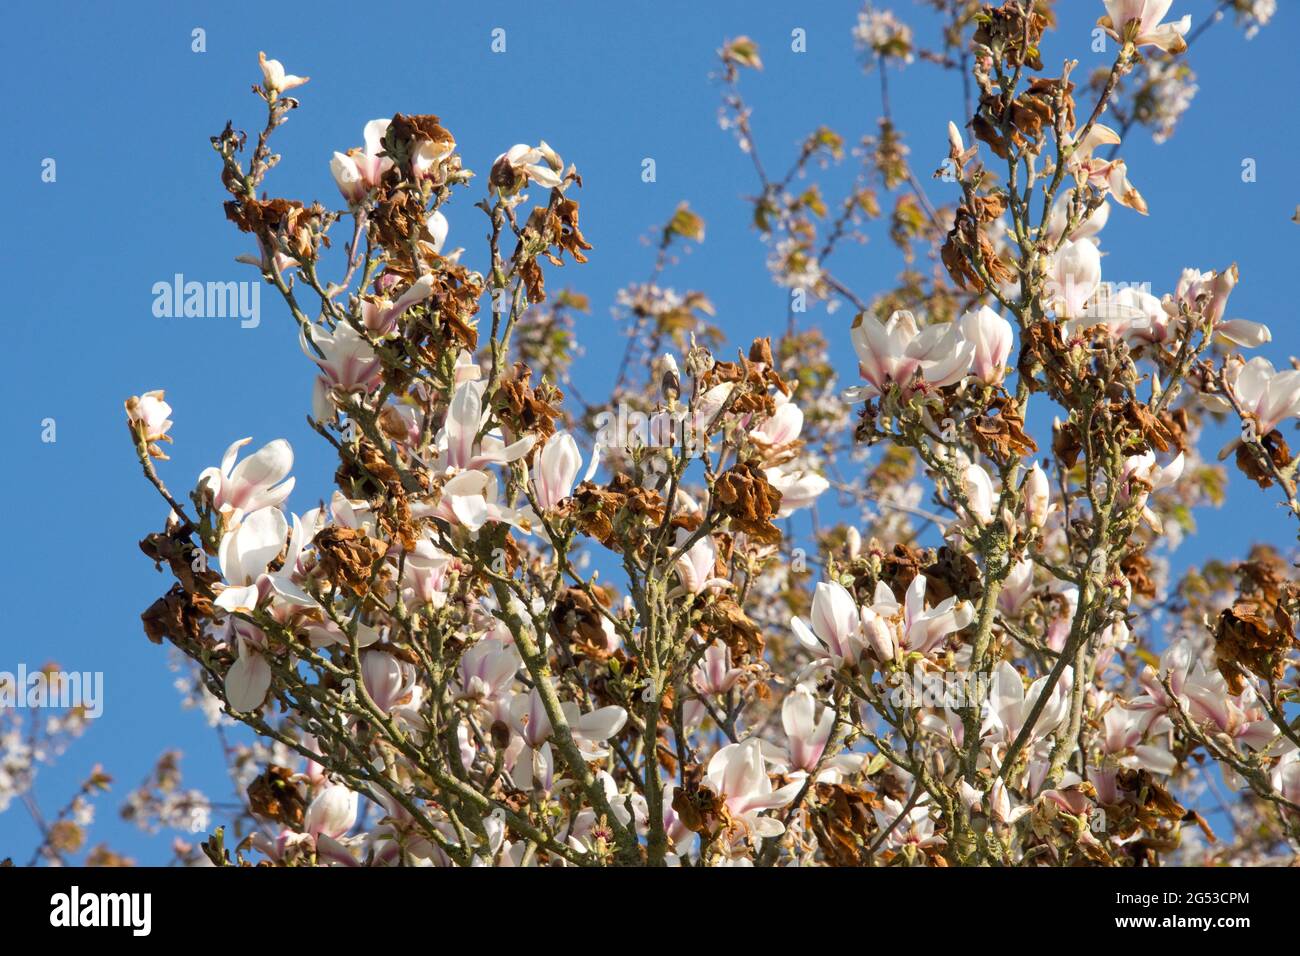 Schwere Kälteschäden, Verbrennungen an chinesischen oder untertassen Magnolien (Magnolia x soulangeana) Blüten nach einem späten Frost, in der Stadt, im April Stockfoto